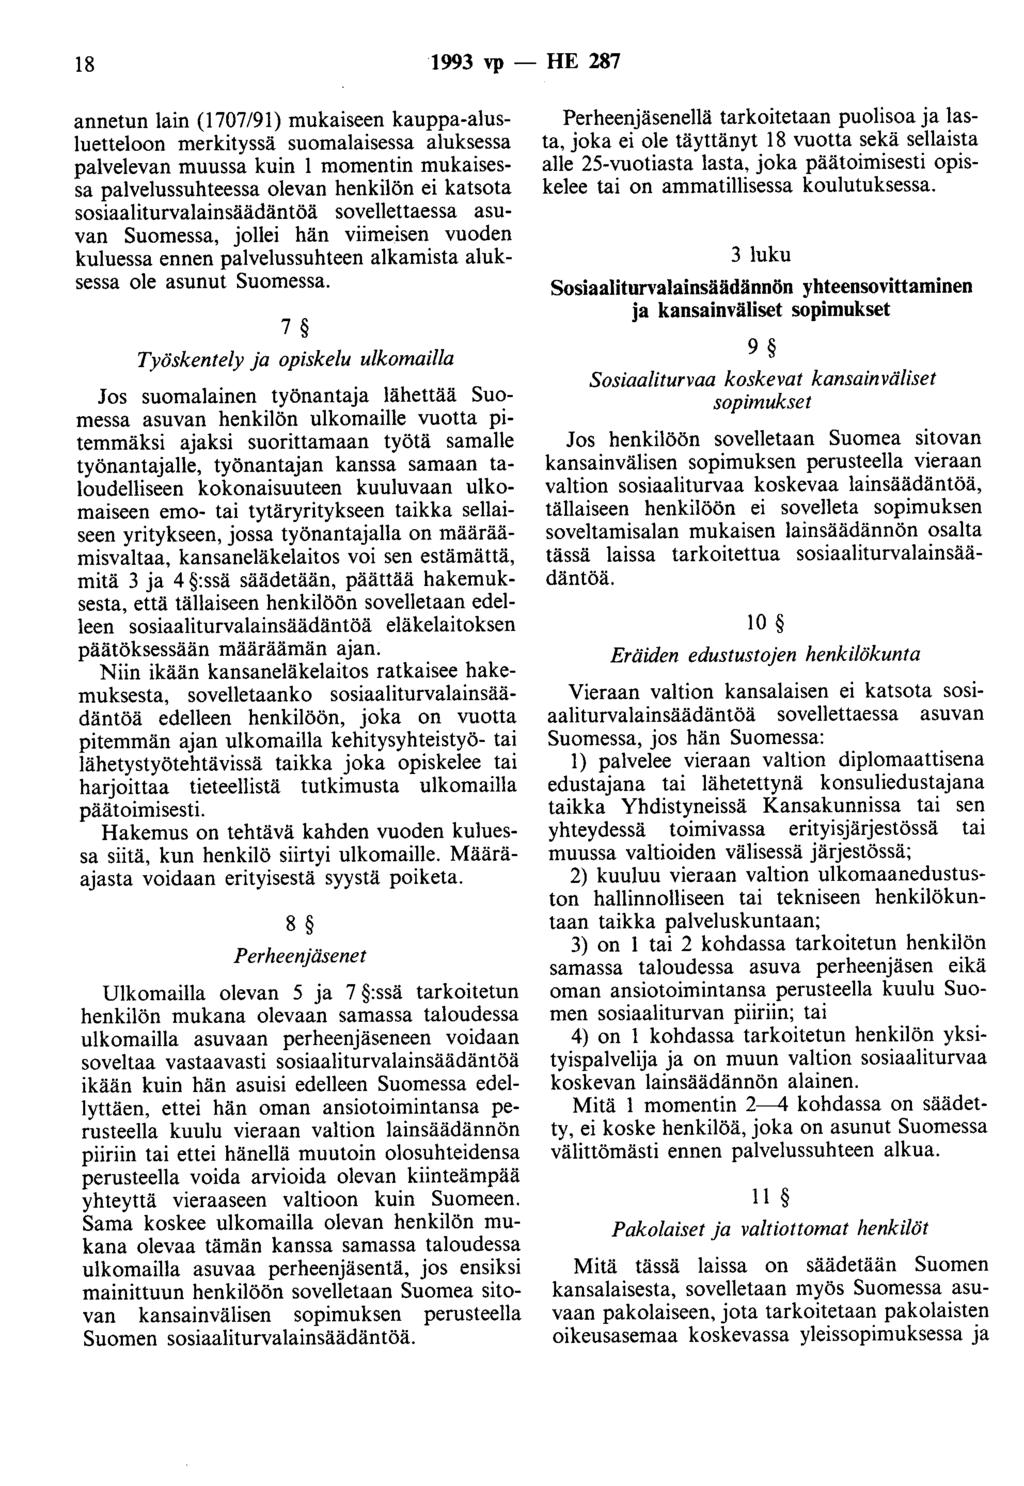 18 1993 vp- HE 287 annetun lain (1707/91) mukaiseen kauppa-alusluetteloon merkityssä suomalaisessa aluksessa palvelevan muussa kuin 1 momentin mukaisessa palvelussuhteessa olevan henkilön ei katsota